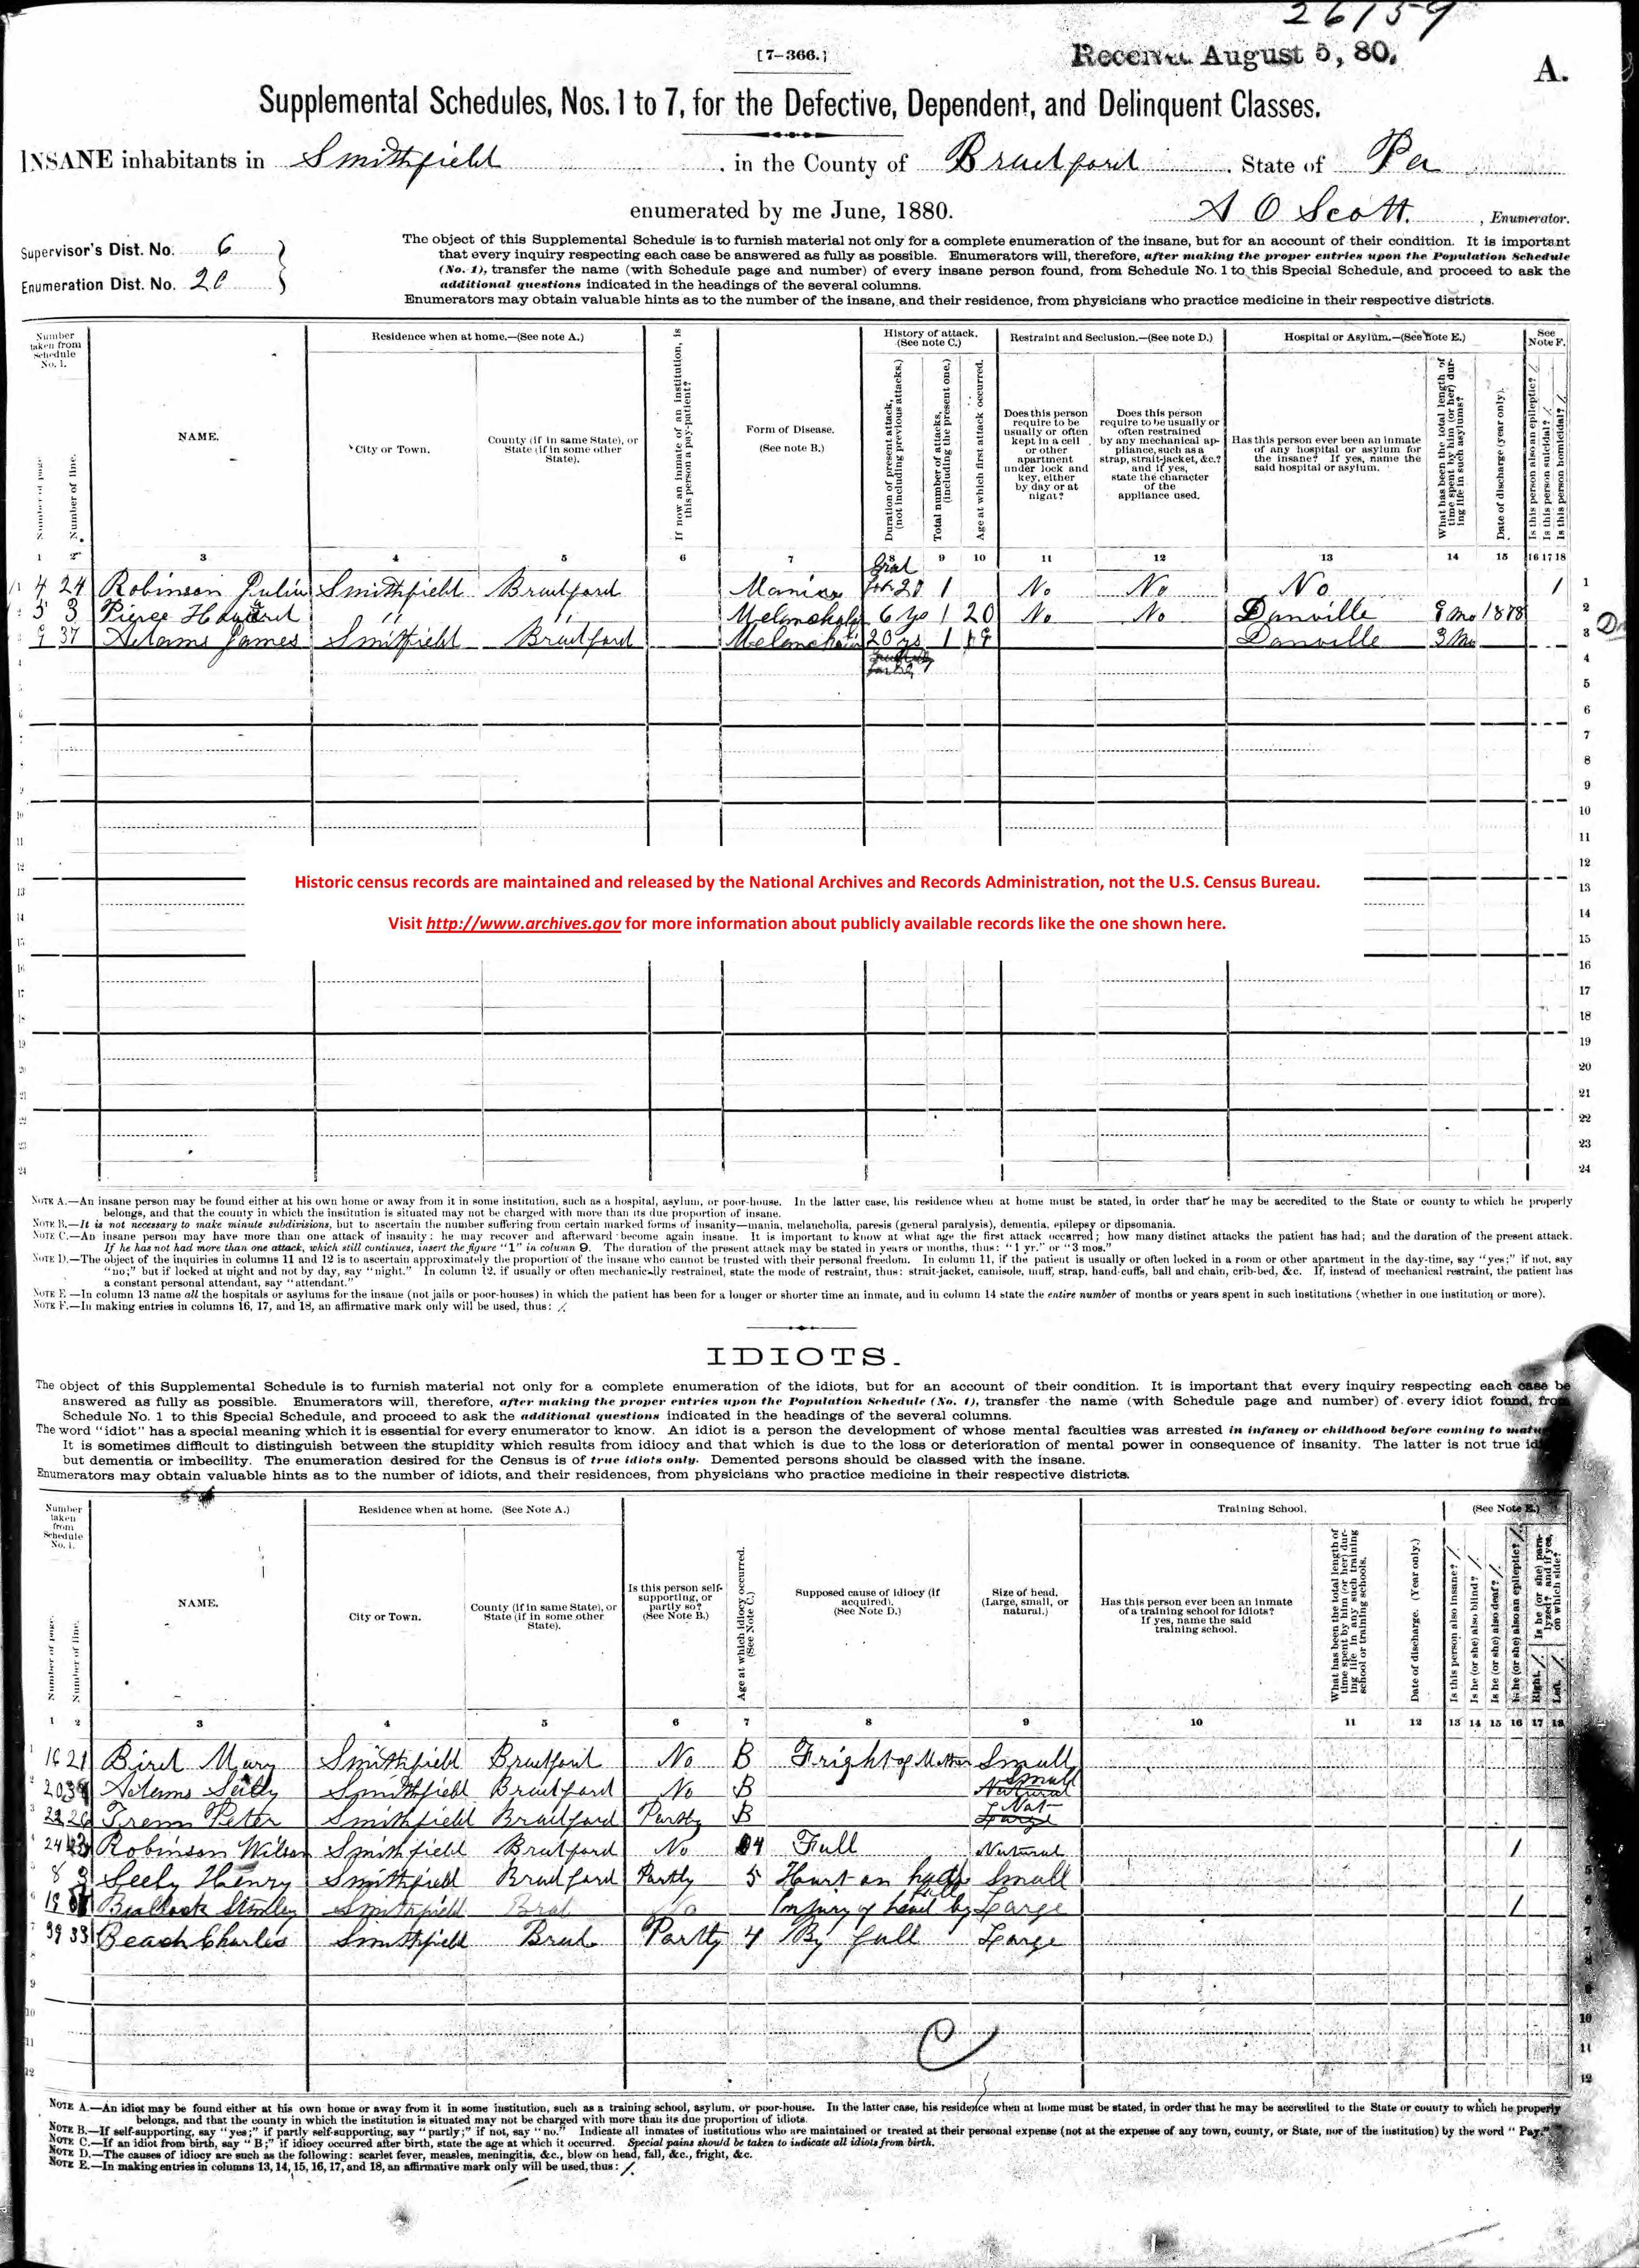 1880 defective, dependent, delinquent classes form